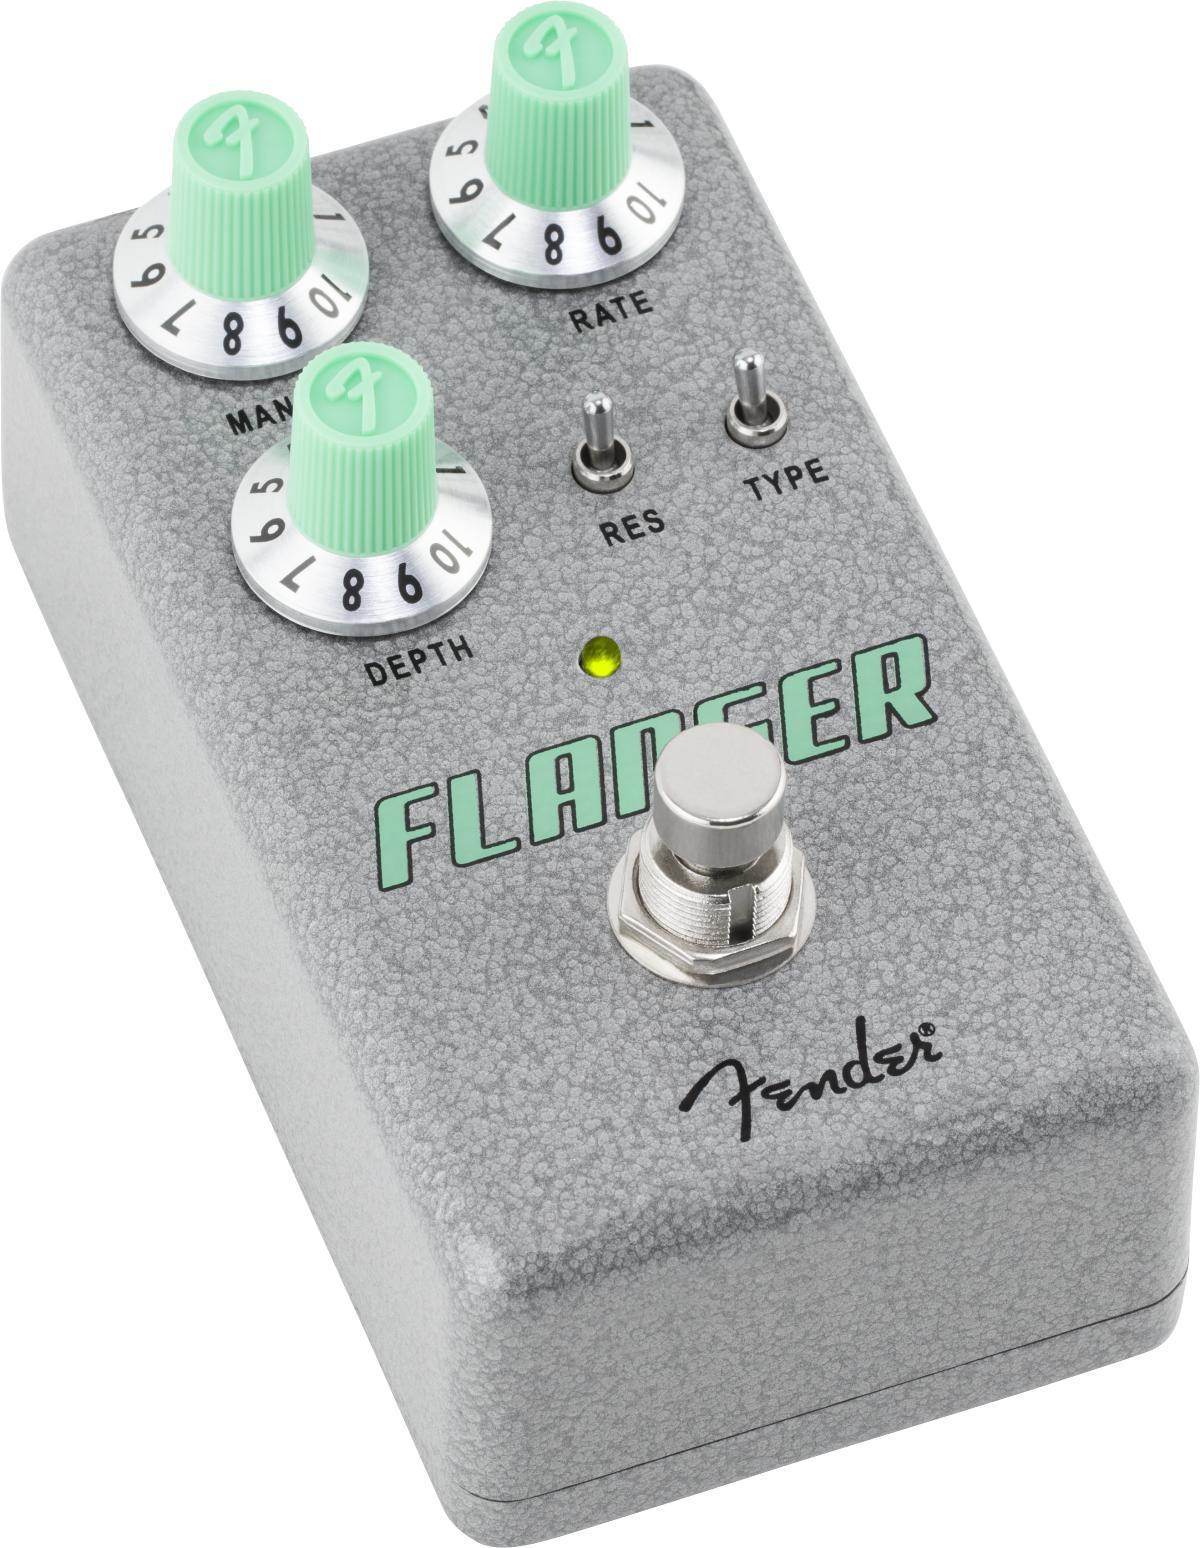 Pédale chorus / flanger / phaser / tremolo Fender HAMMERTONE FLANGER